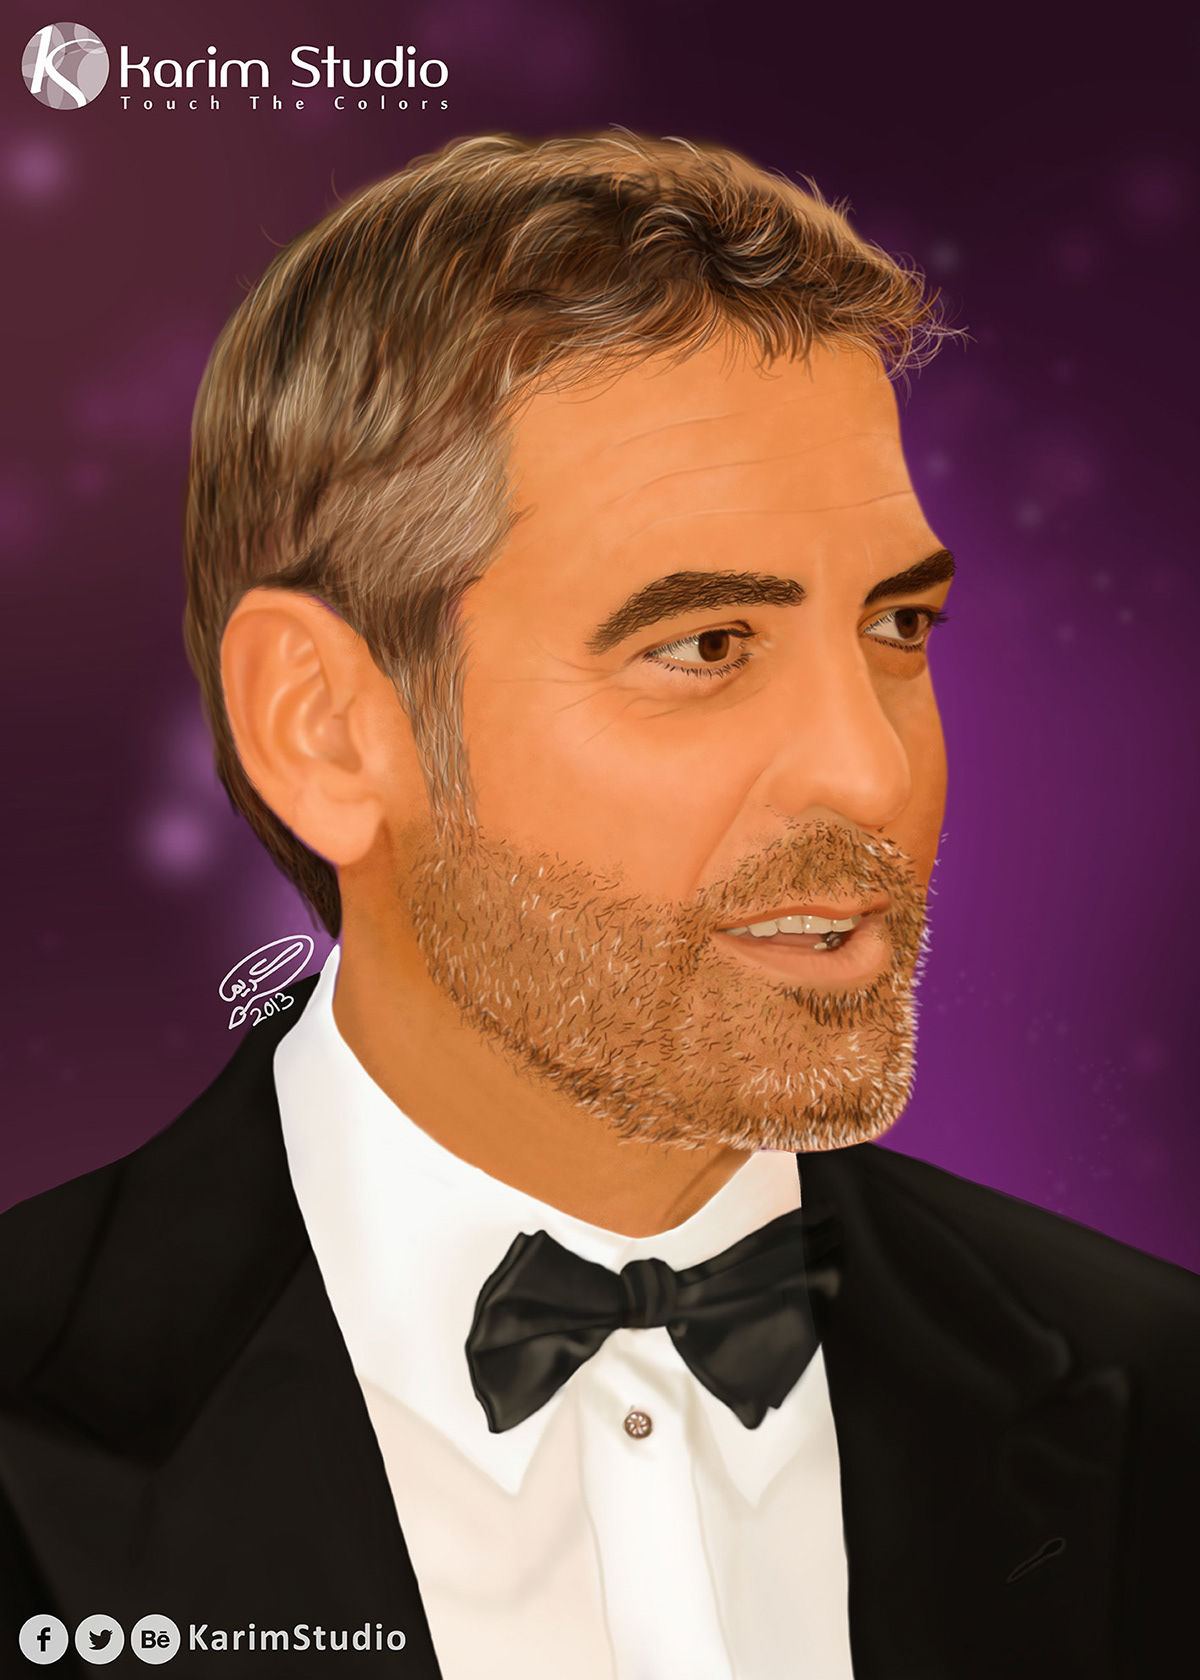 george clooney George Clooney art karim studio actor